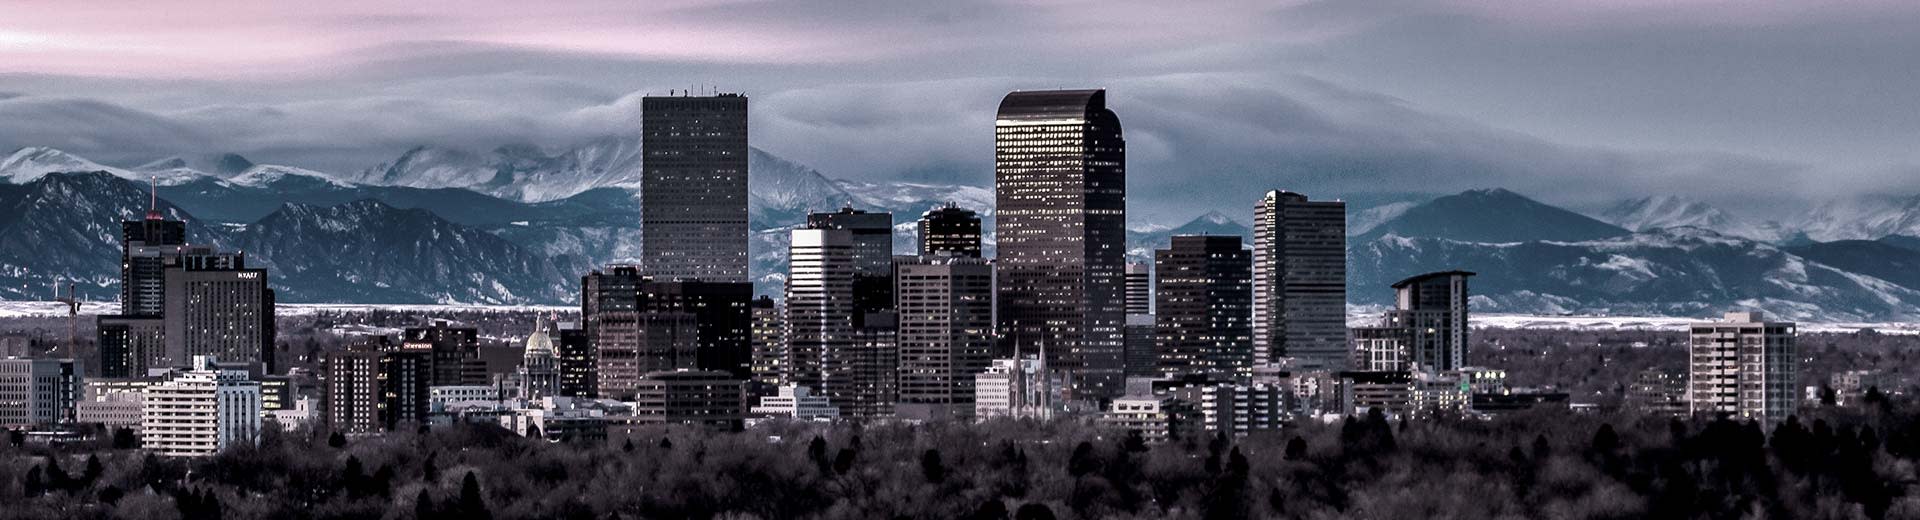 La ciudad de Denver, con las montañas rocosas en el fondo y los rascacielos en primer plano.